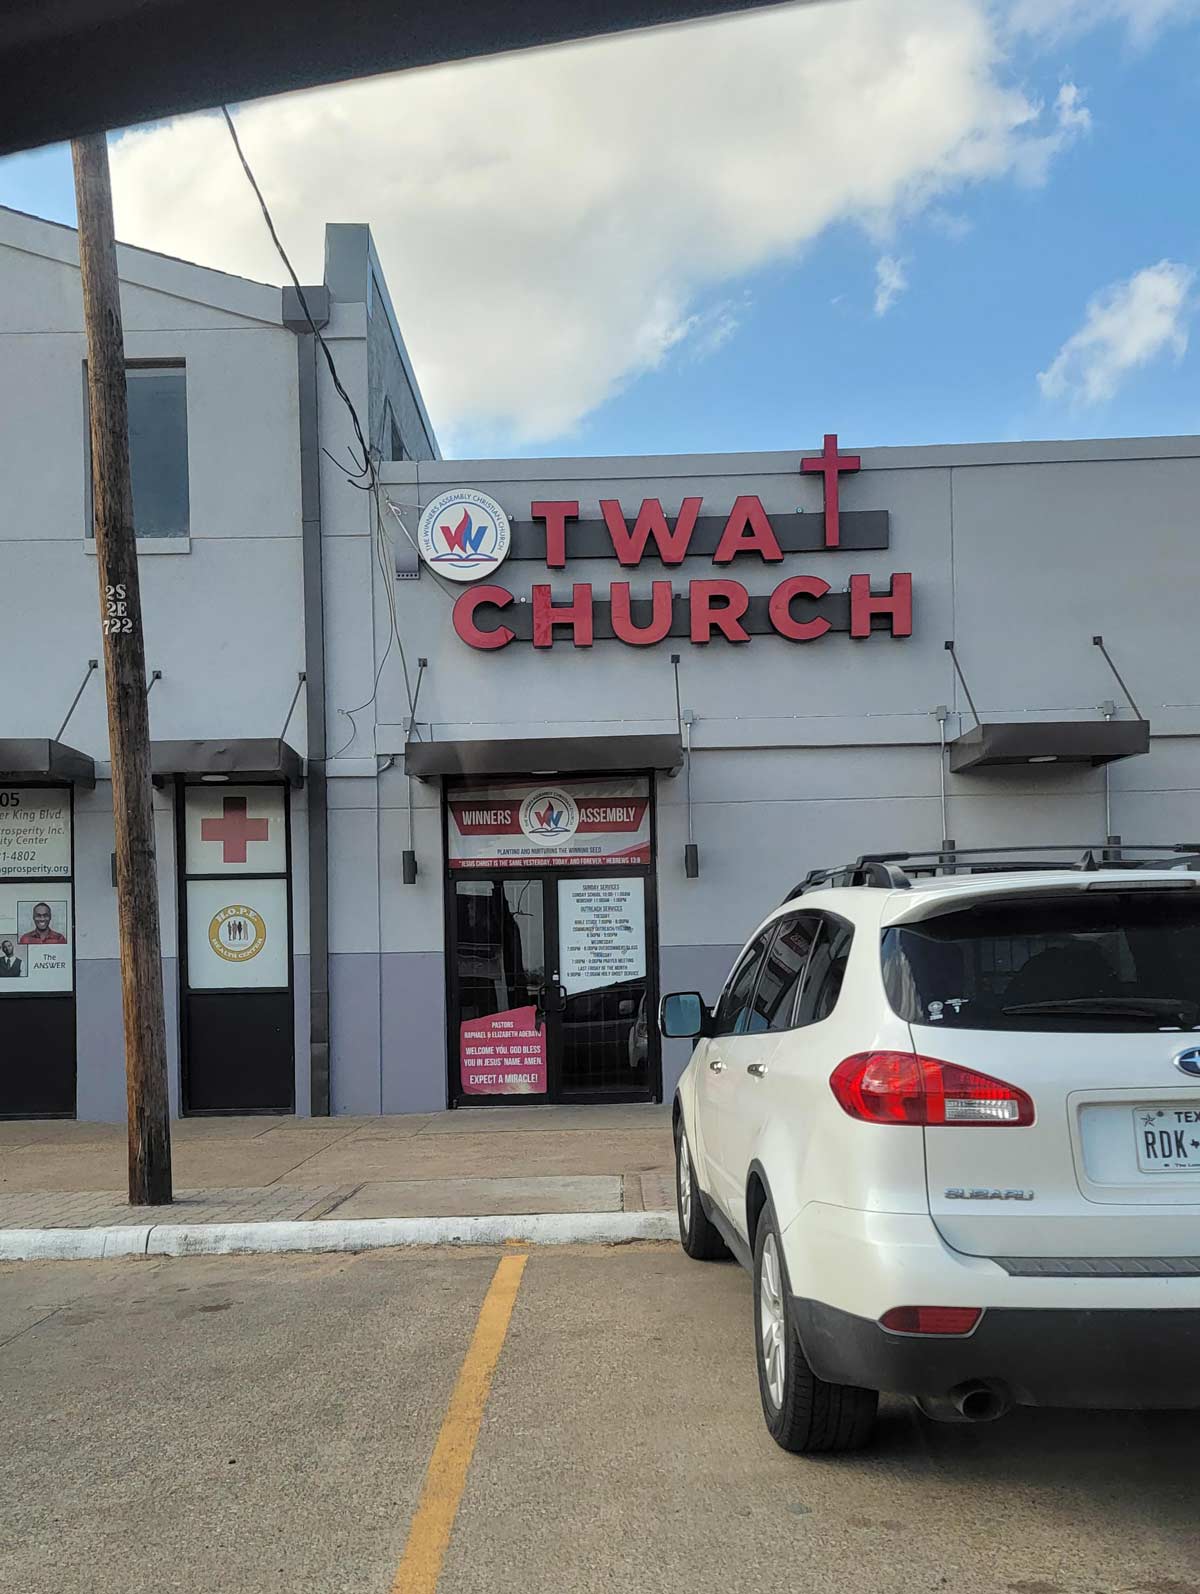 The what church?